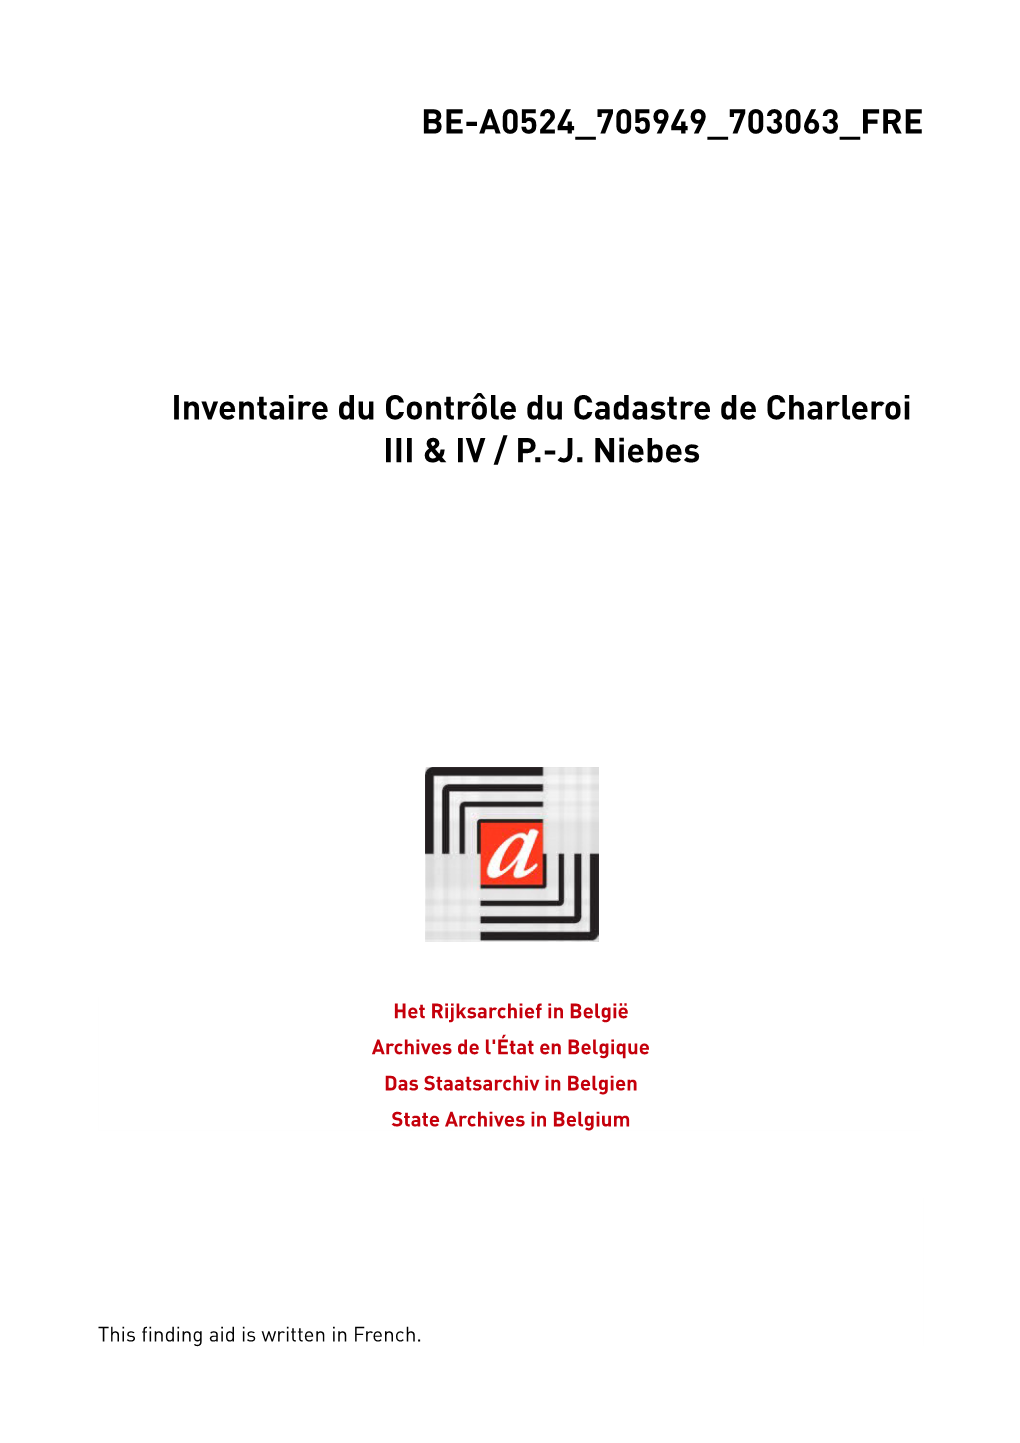 Contrôles Du Cadastre De Charleroi III & IV (Fleurus)